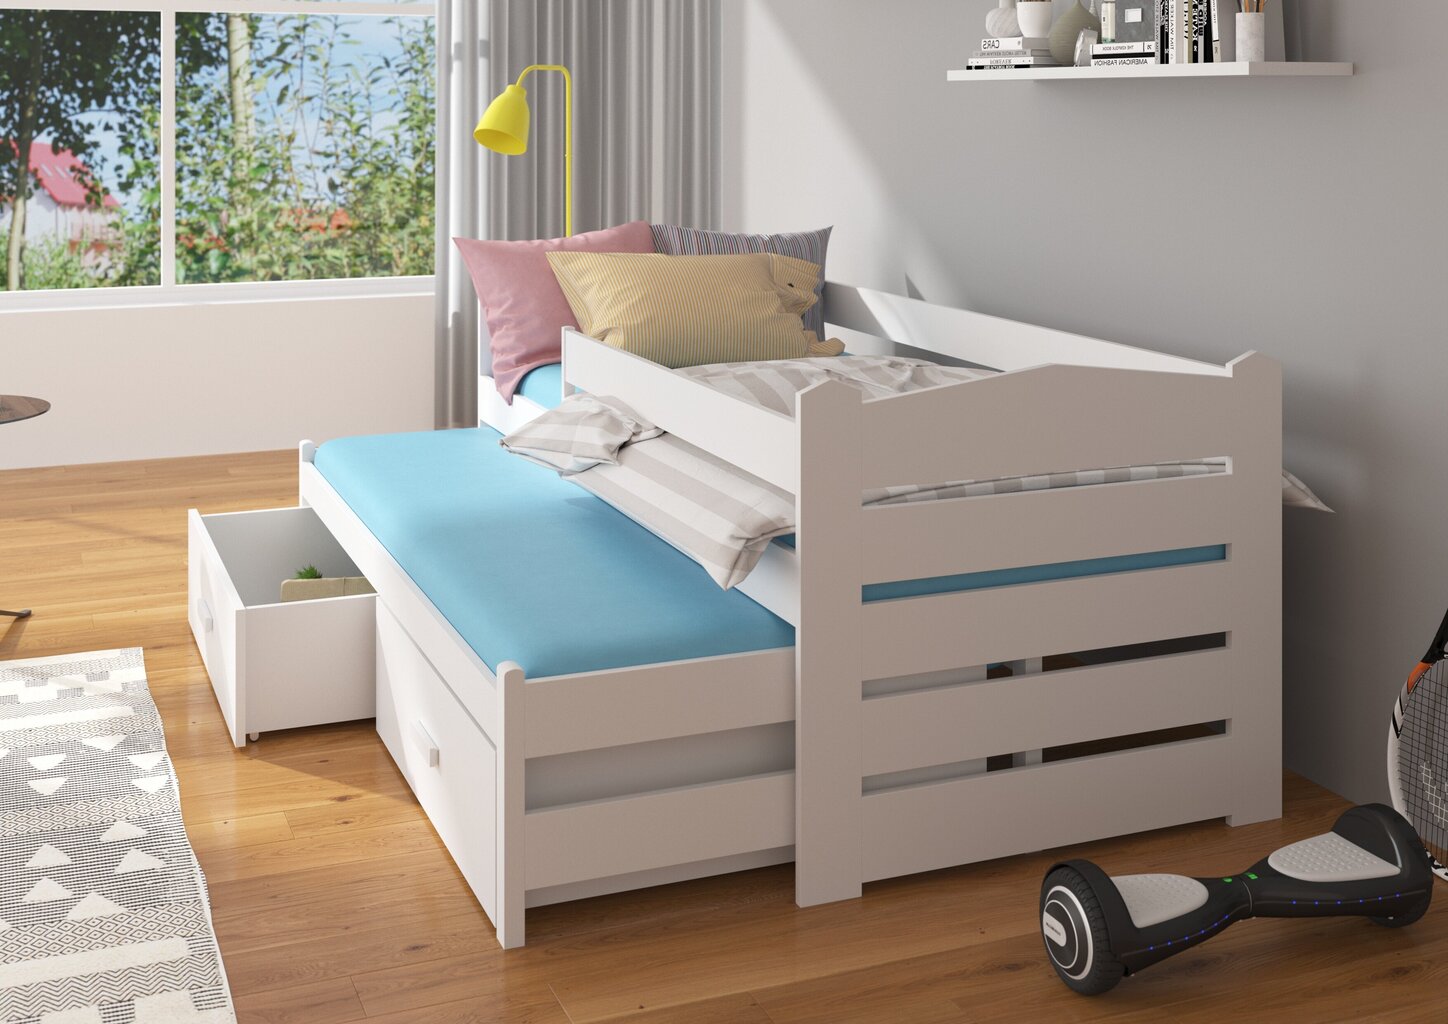 Bērnu gulta Adrk Furniture Tiarro 90x200 cm ar sānu aizsardzību, balta/gaiši brūna cena un informācija | Bērnu gultas | 220.lv